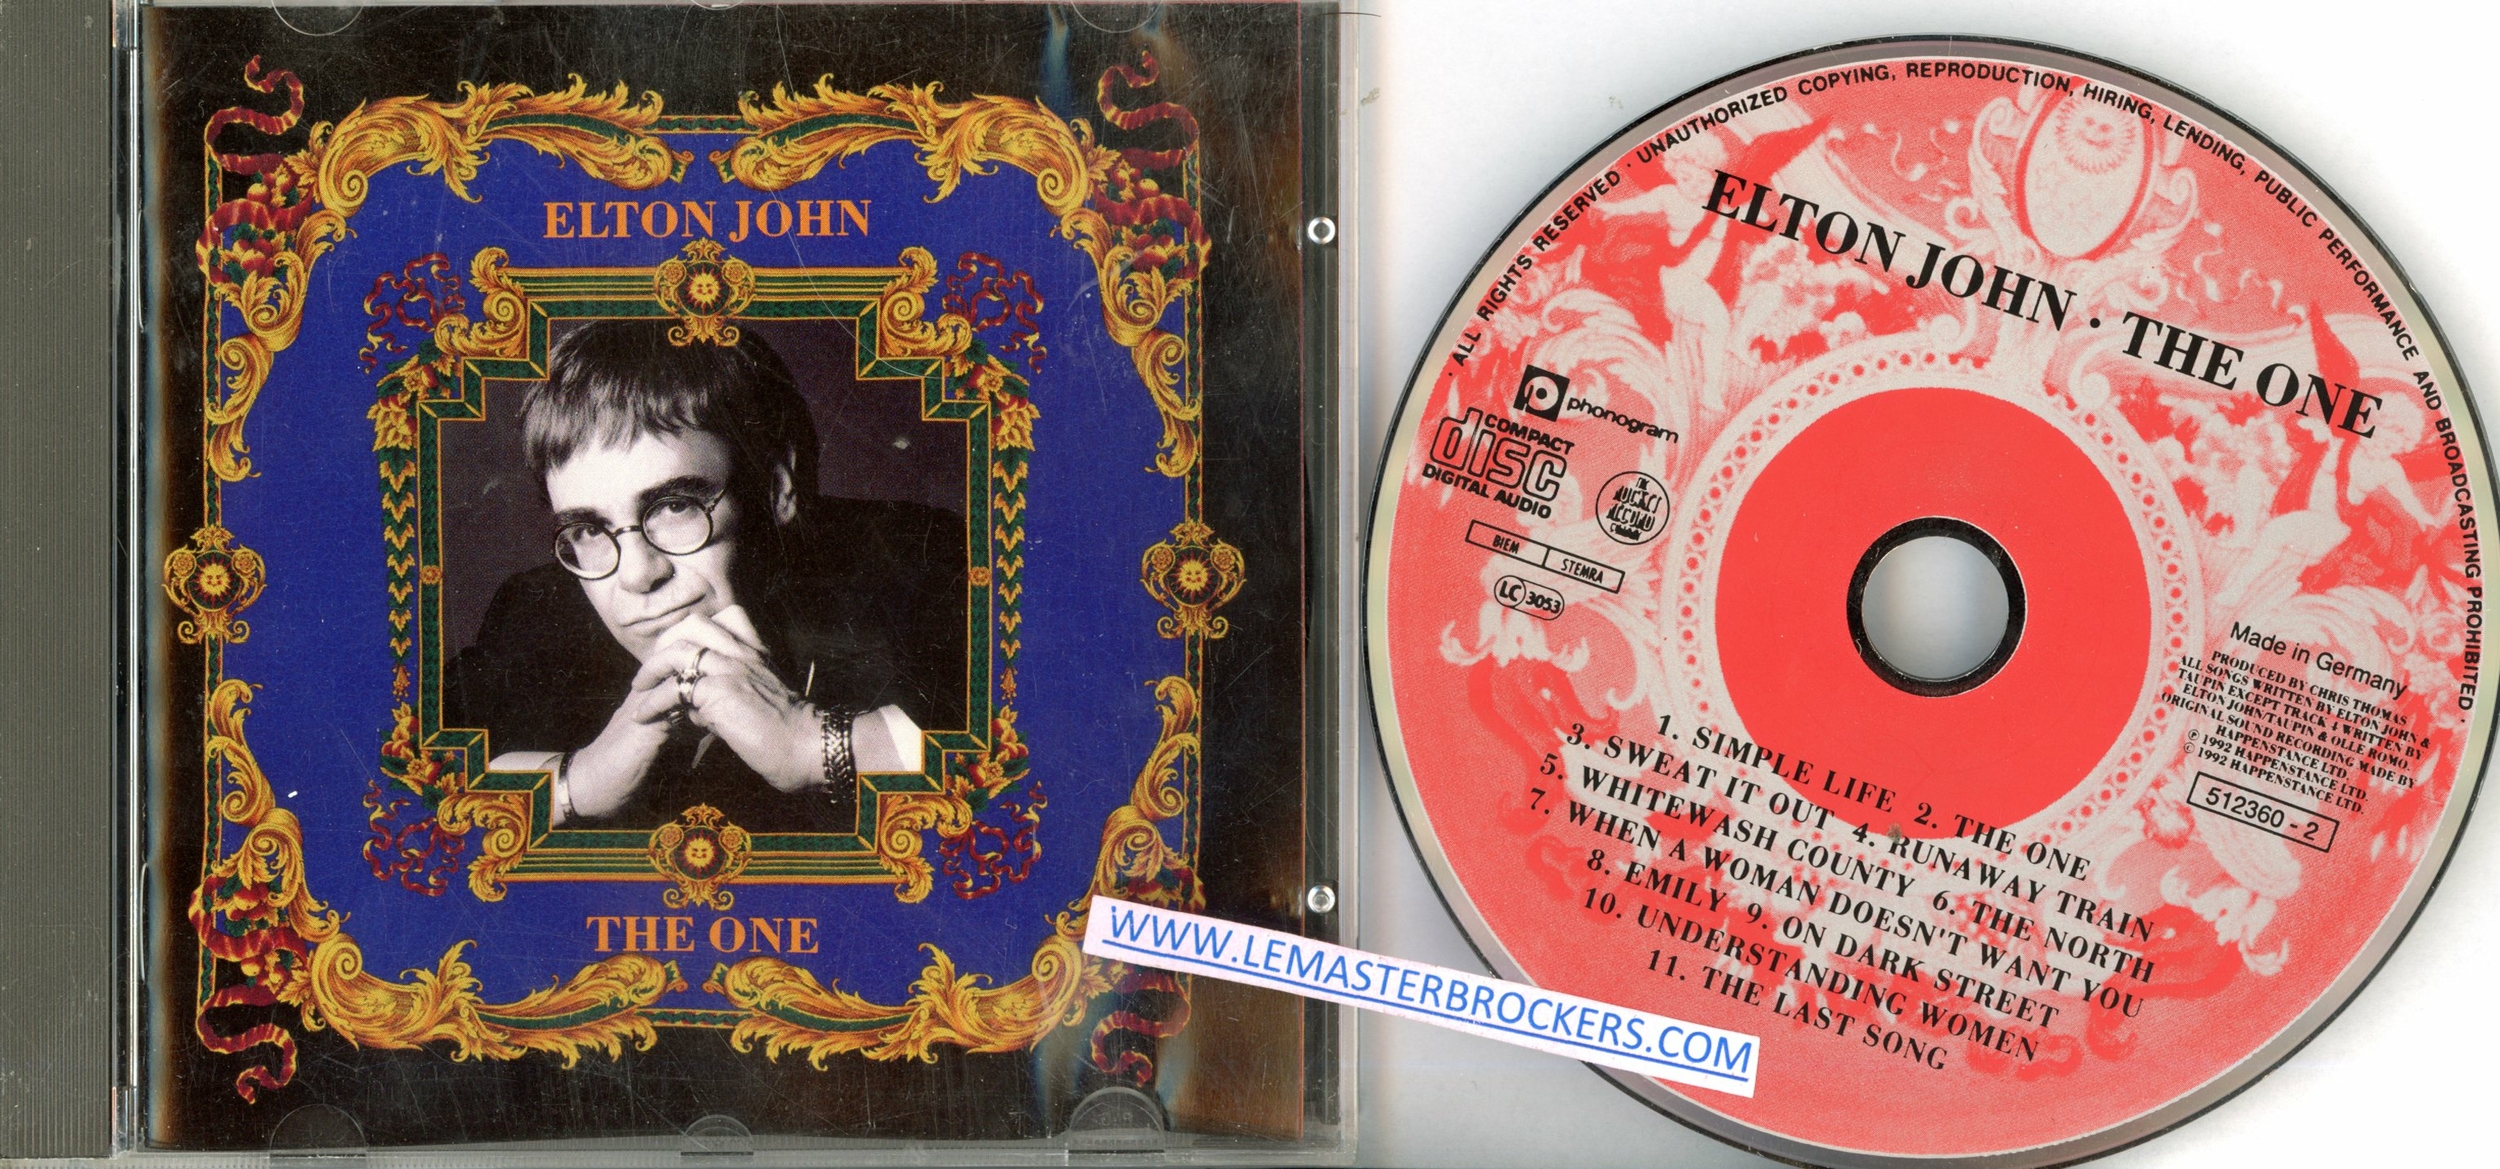 ALBUM ELTON JOHN THE ONE - EAN 731451236020